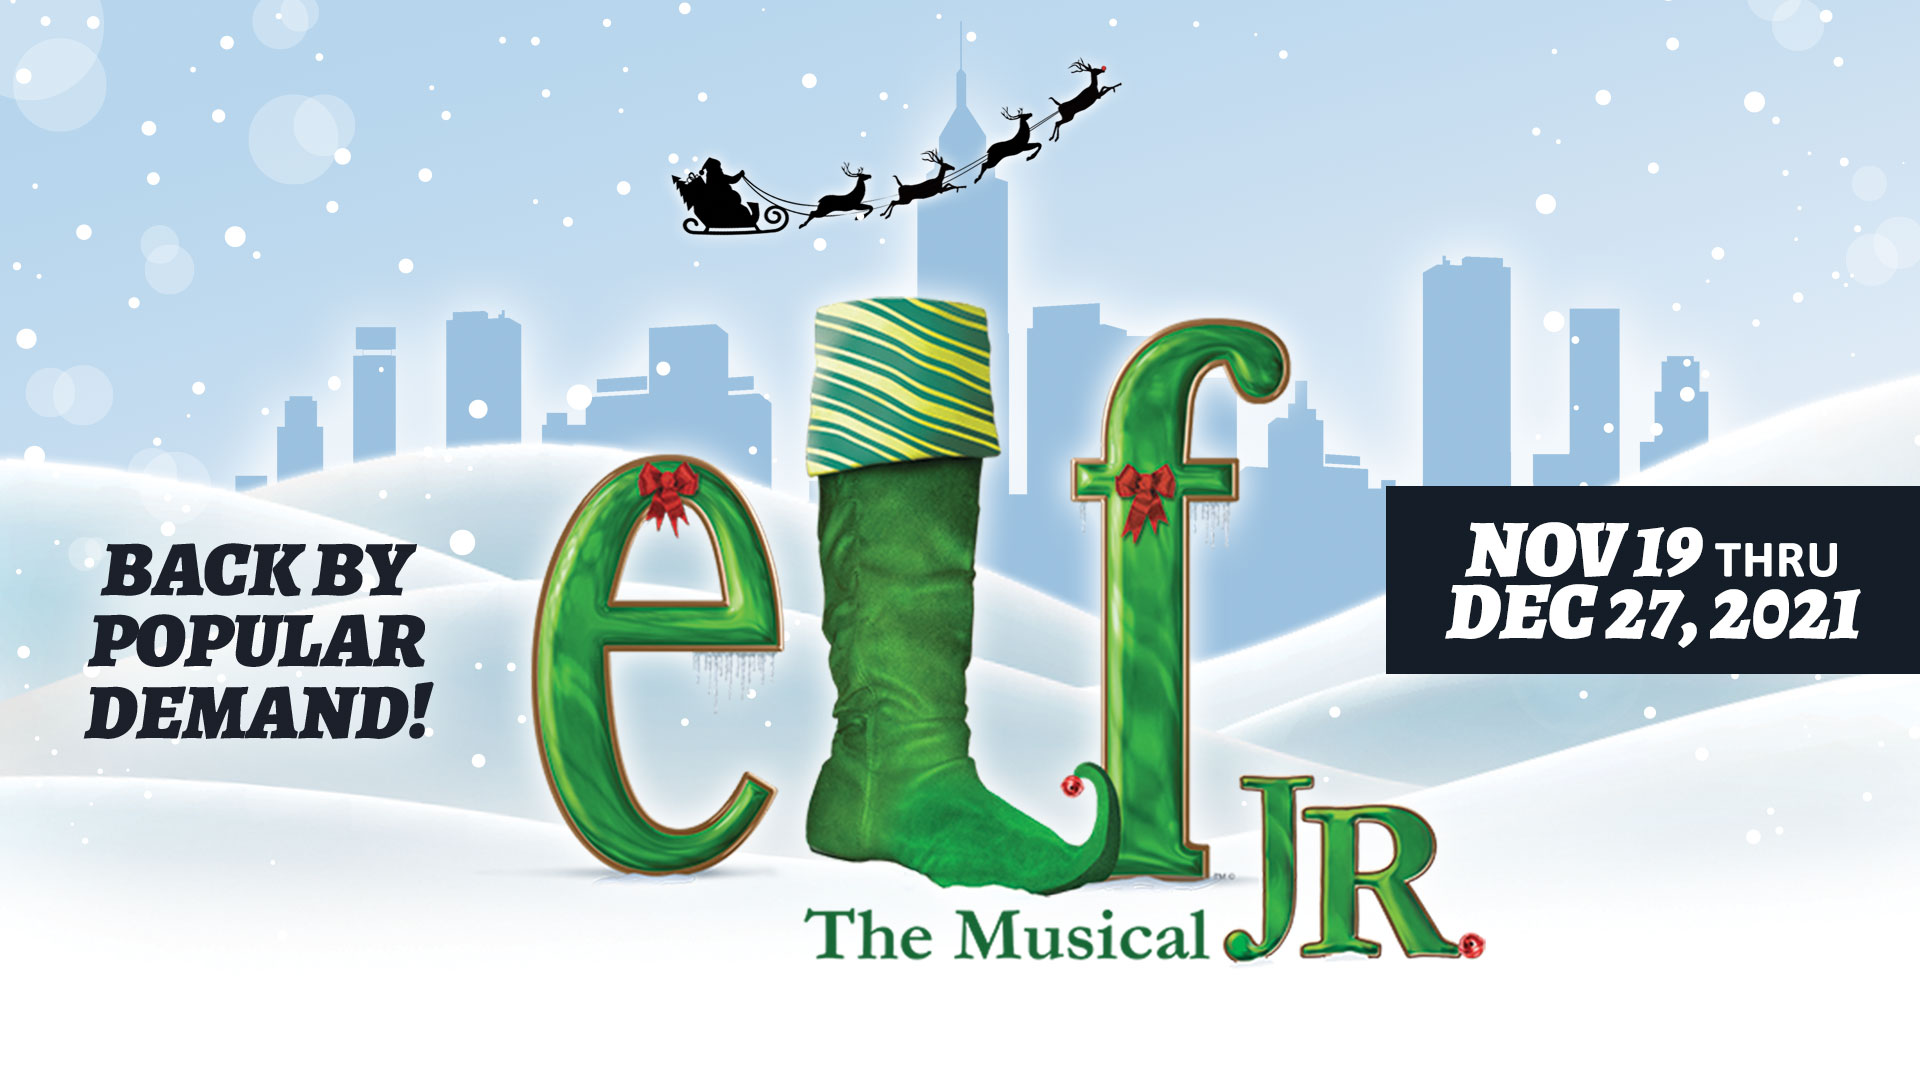 Elf the Musical, Jr. Nov. 19 - Dec. 27, 2021 • All Ages